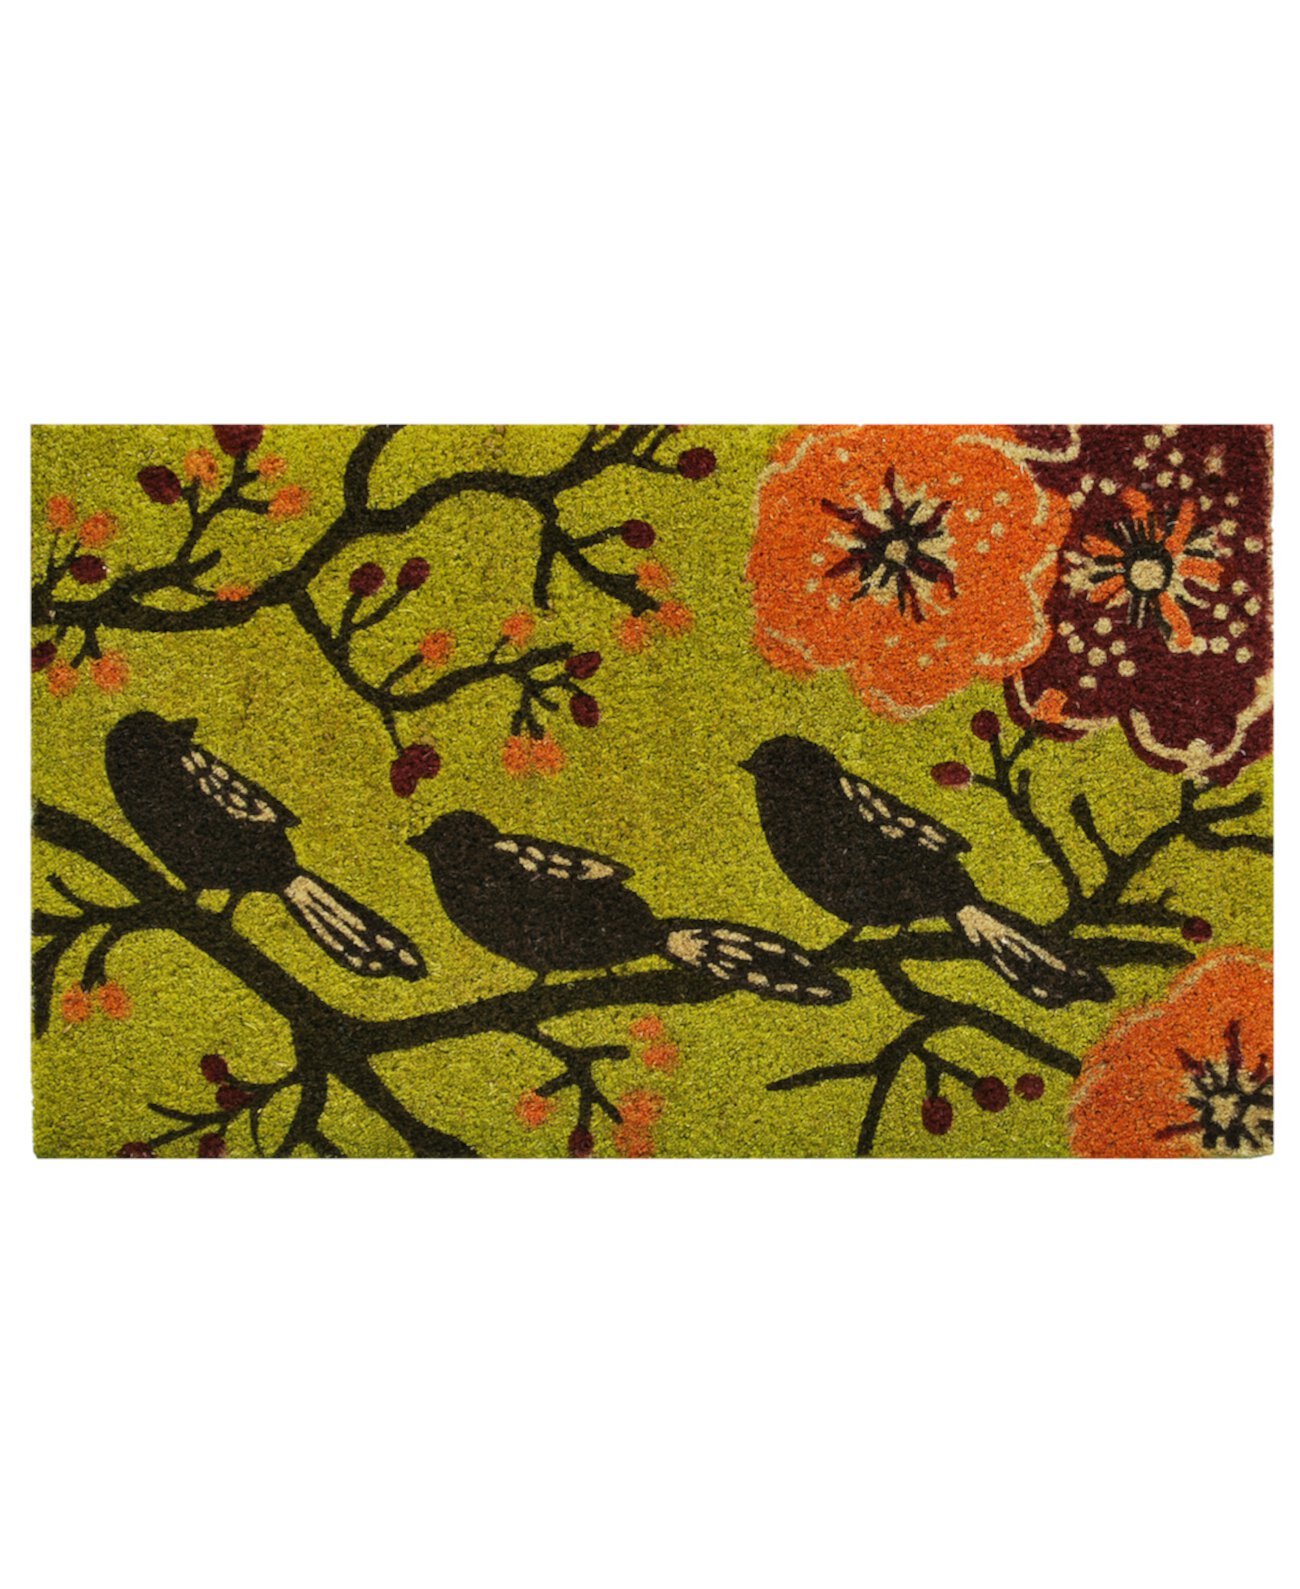 Птицы на дереве, 24 x 36 дюймов, кокосовая койра / виниловый коврик Home & More